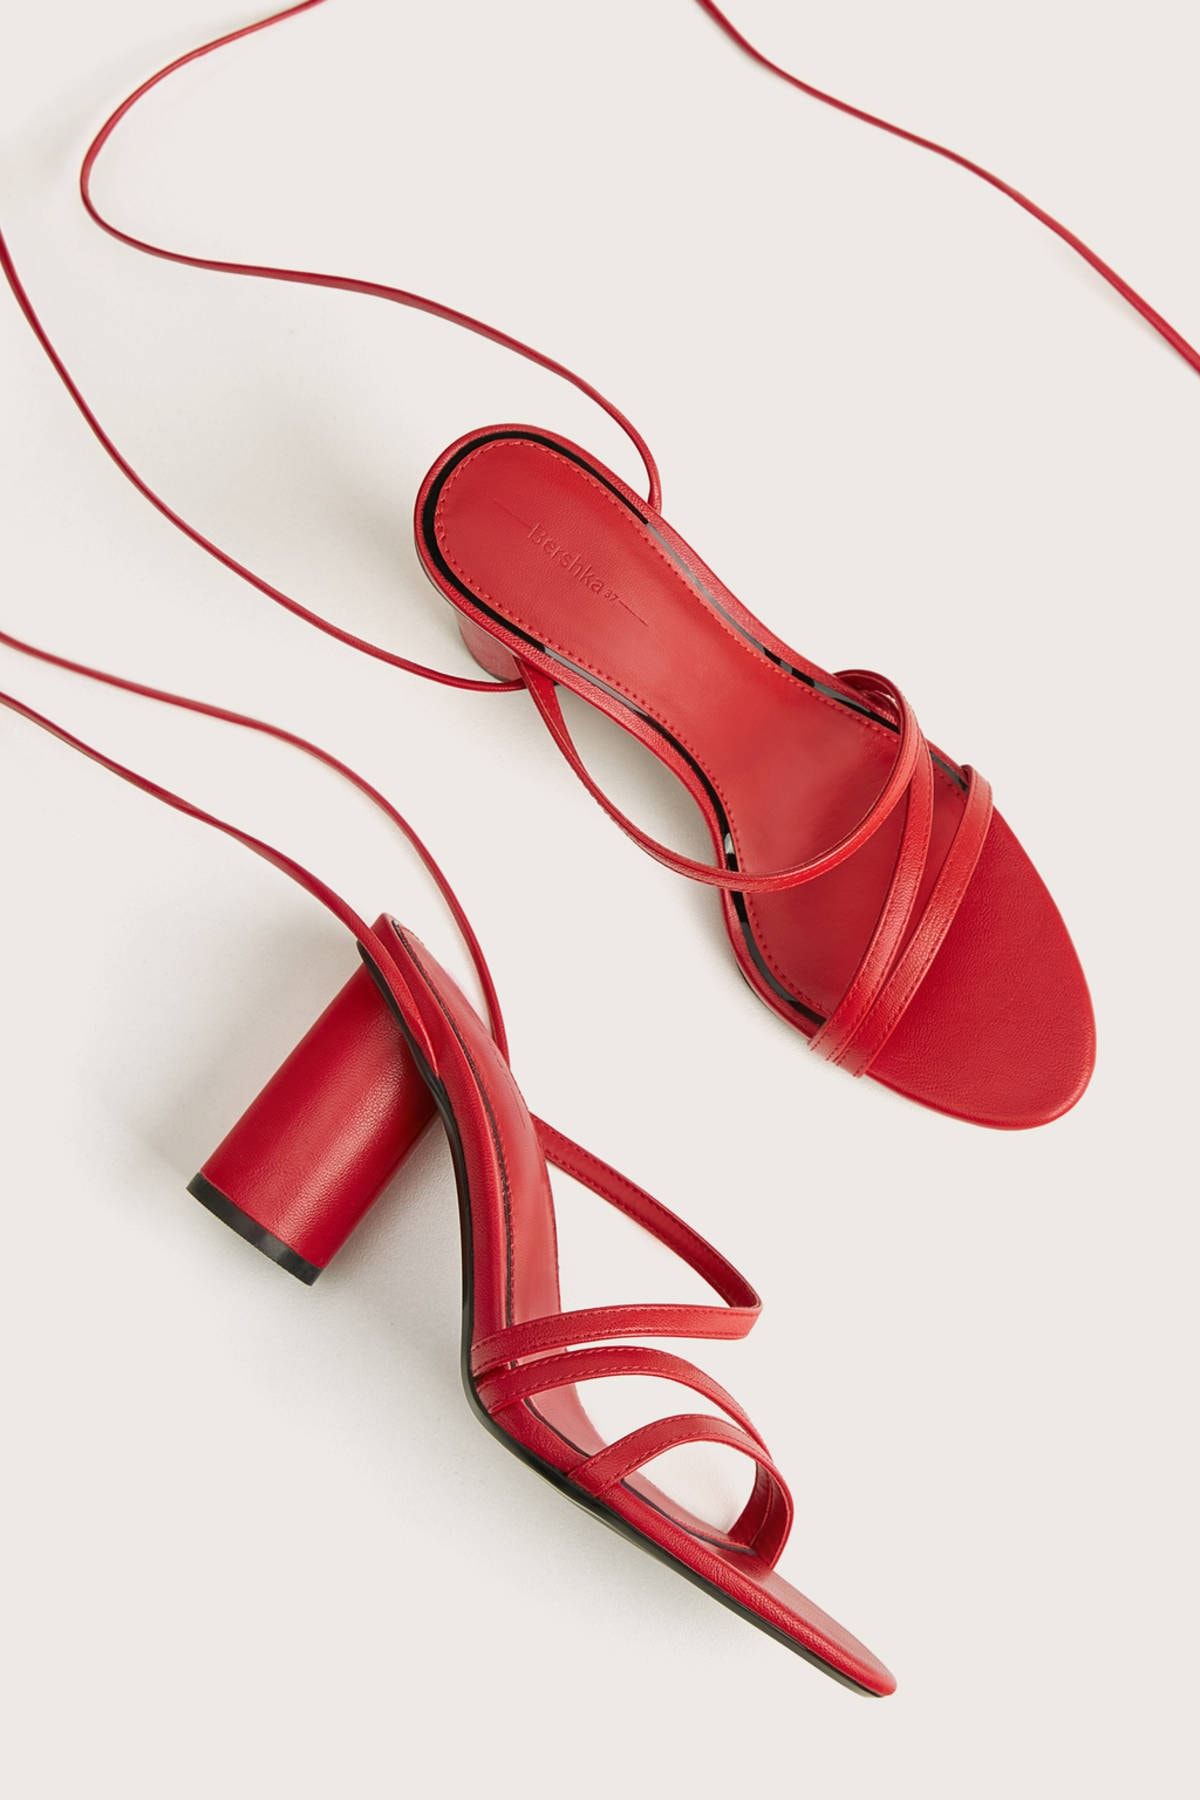 Bershka Kadın Kırmızı Bağcıklı Ve Bantlı Blok Topuklu Sandalet 11715560